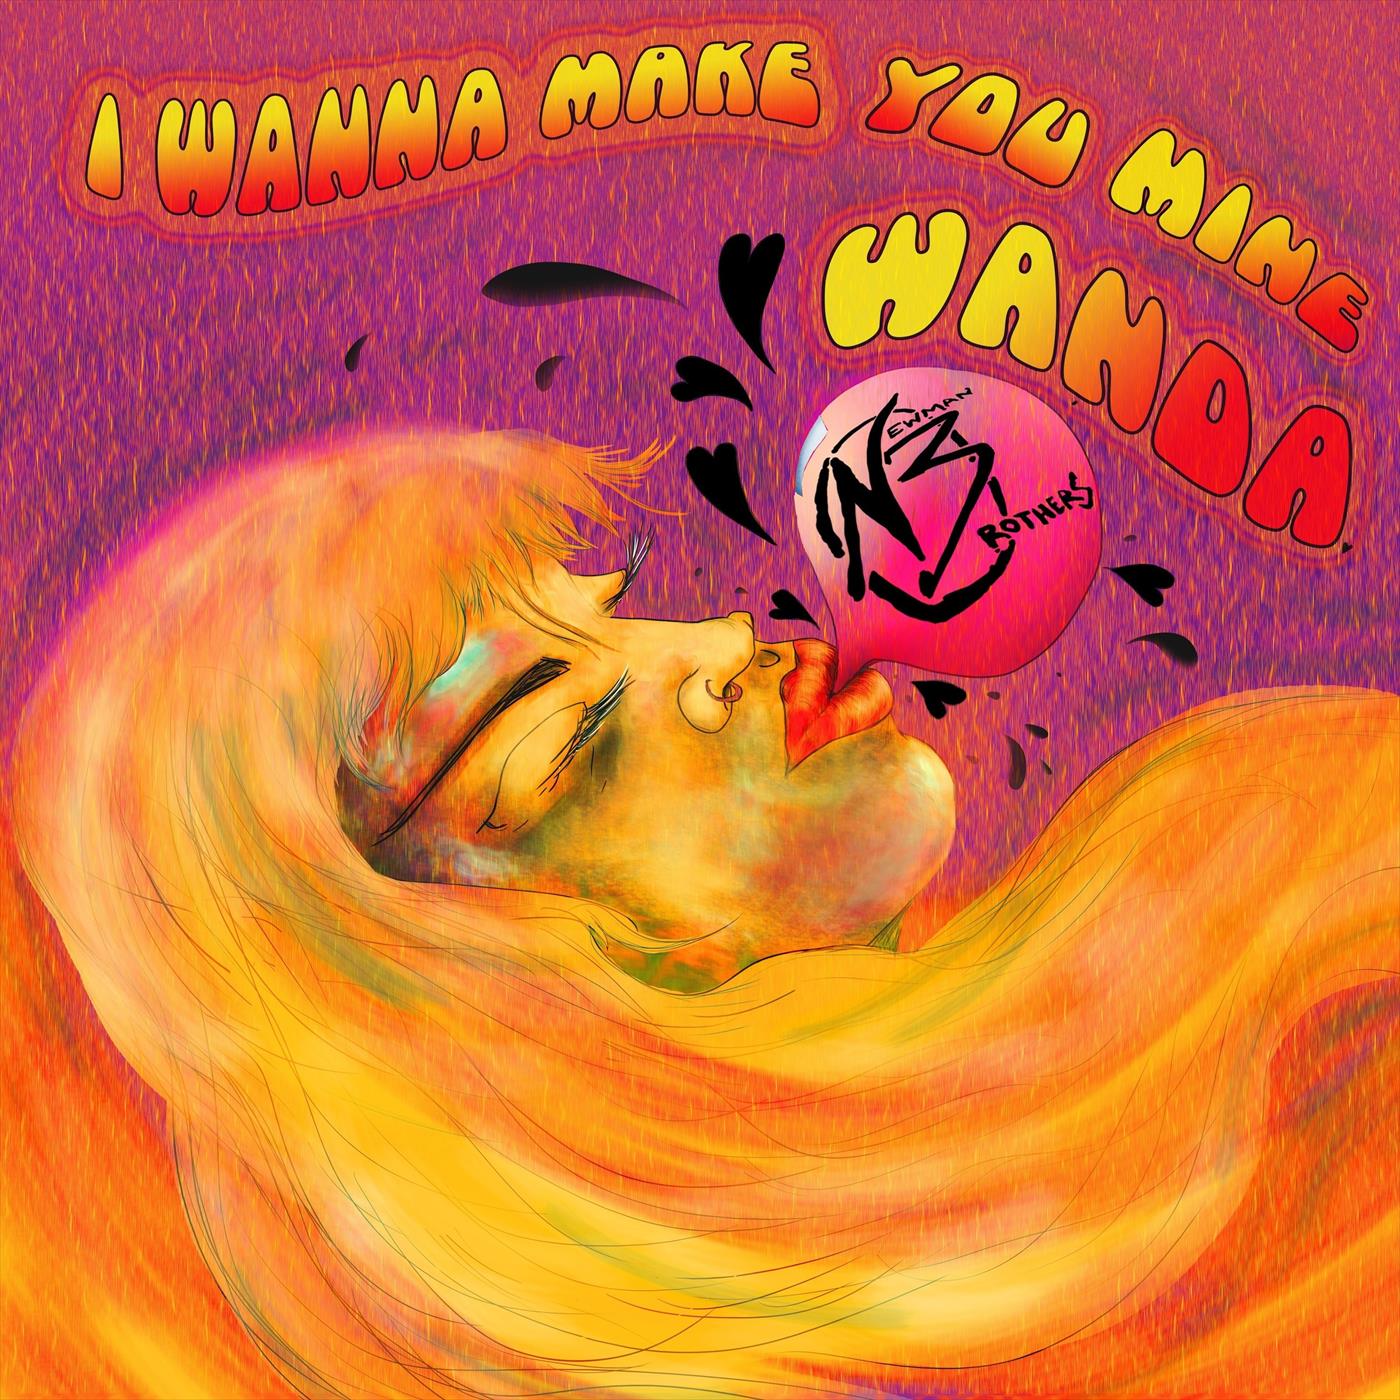 I Wanna Make You Mine (Wanda)